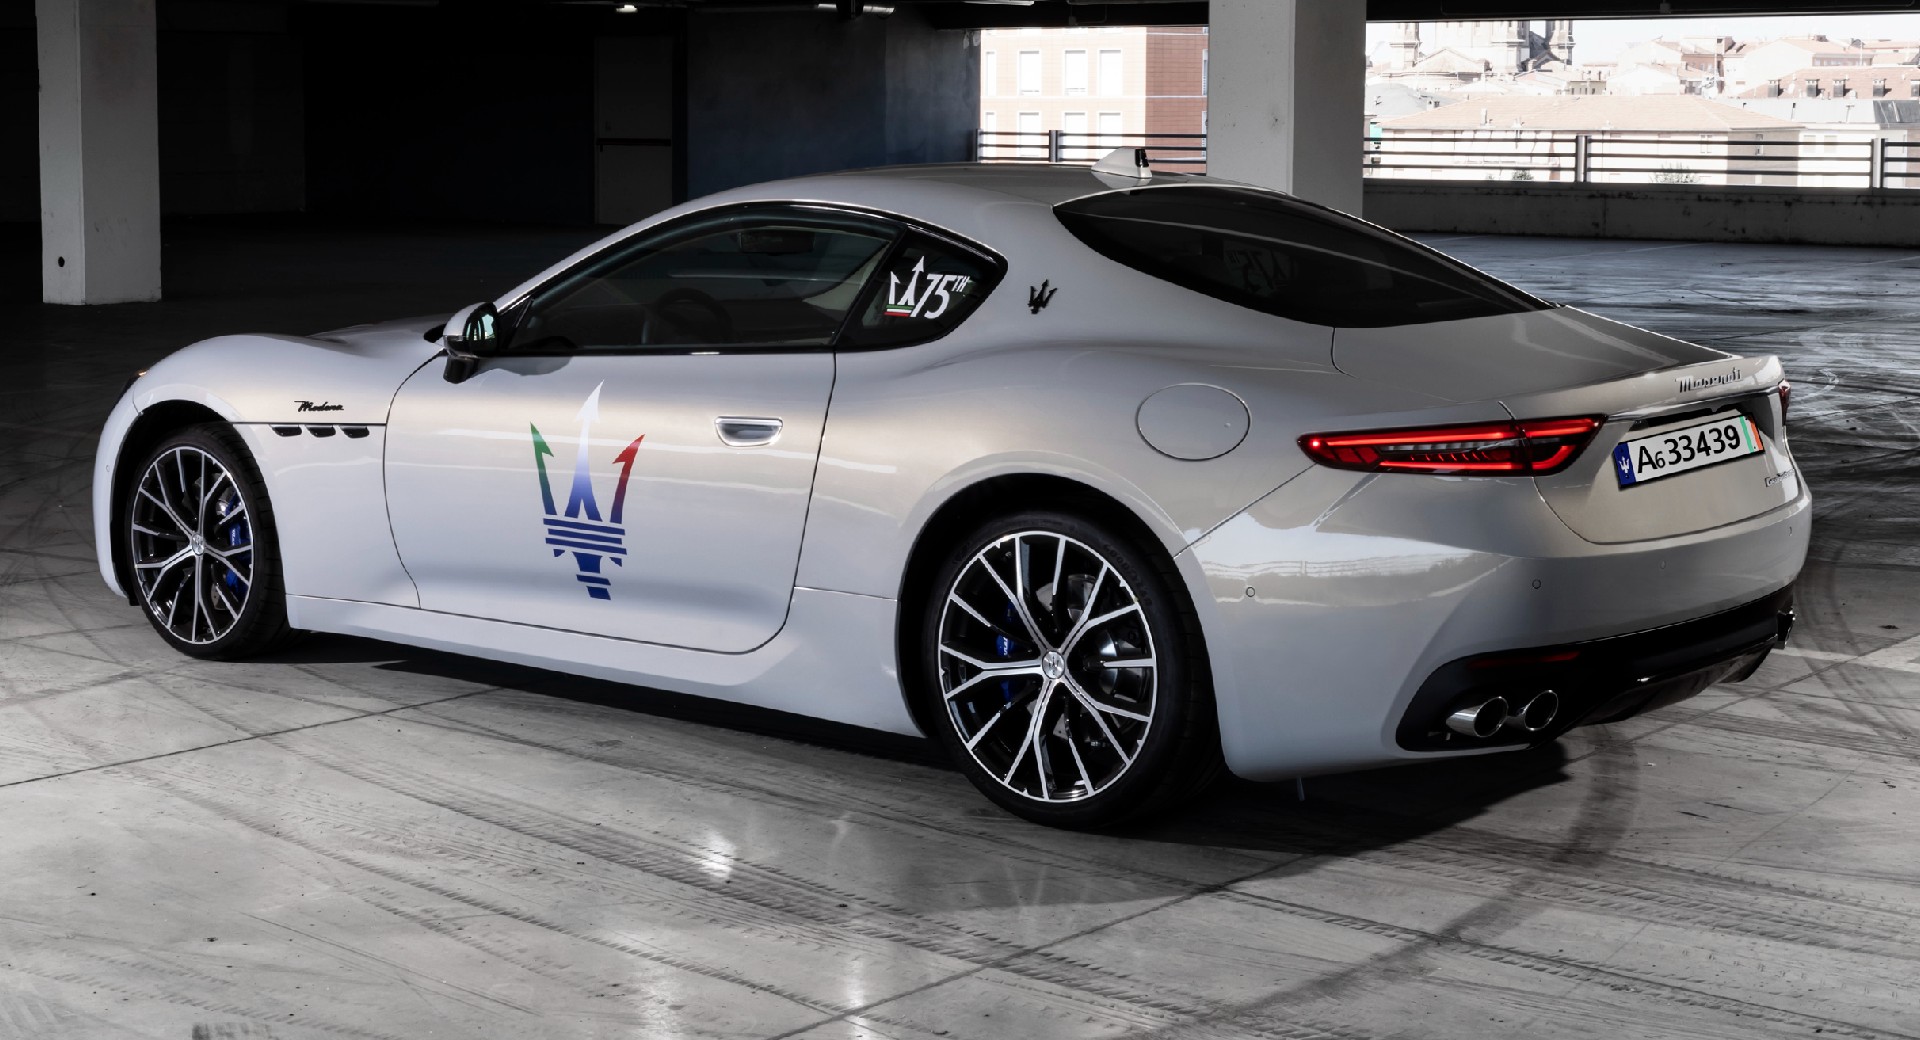 Maserati GranTurismo Reveals Exterior Design And Style Confirms MC S V Motor Dingenoter